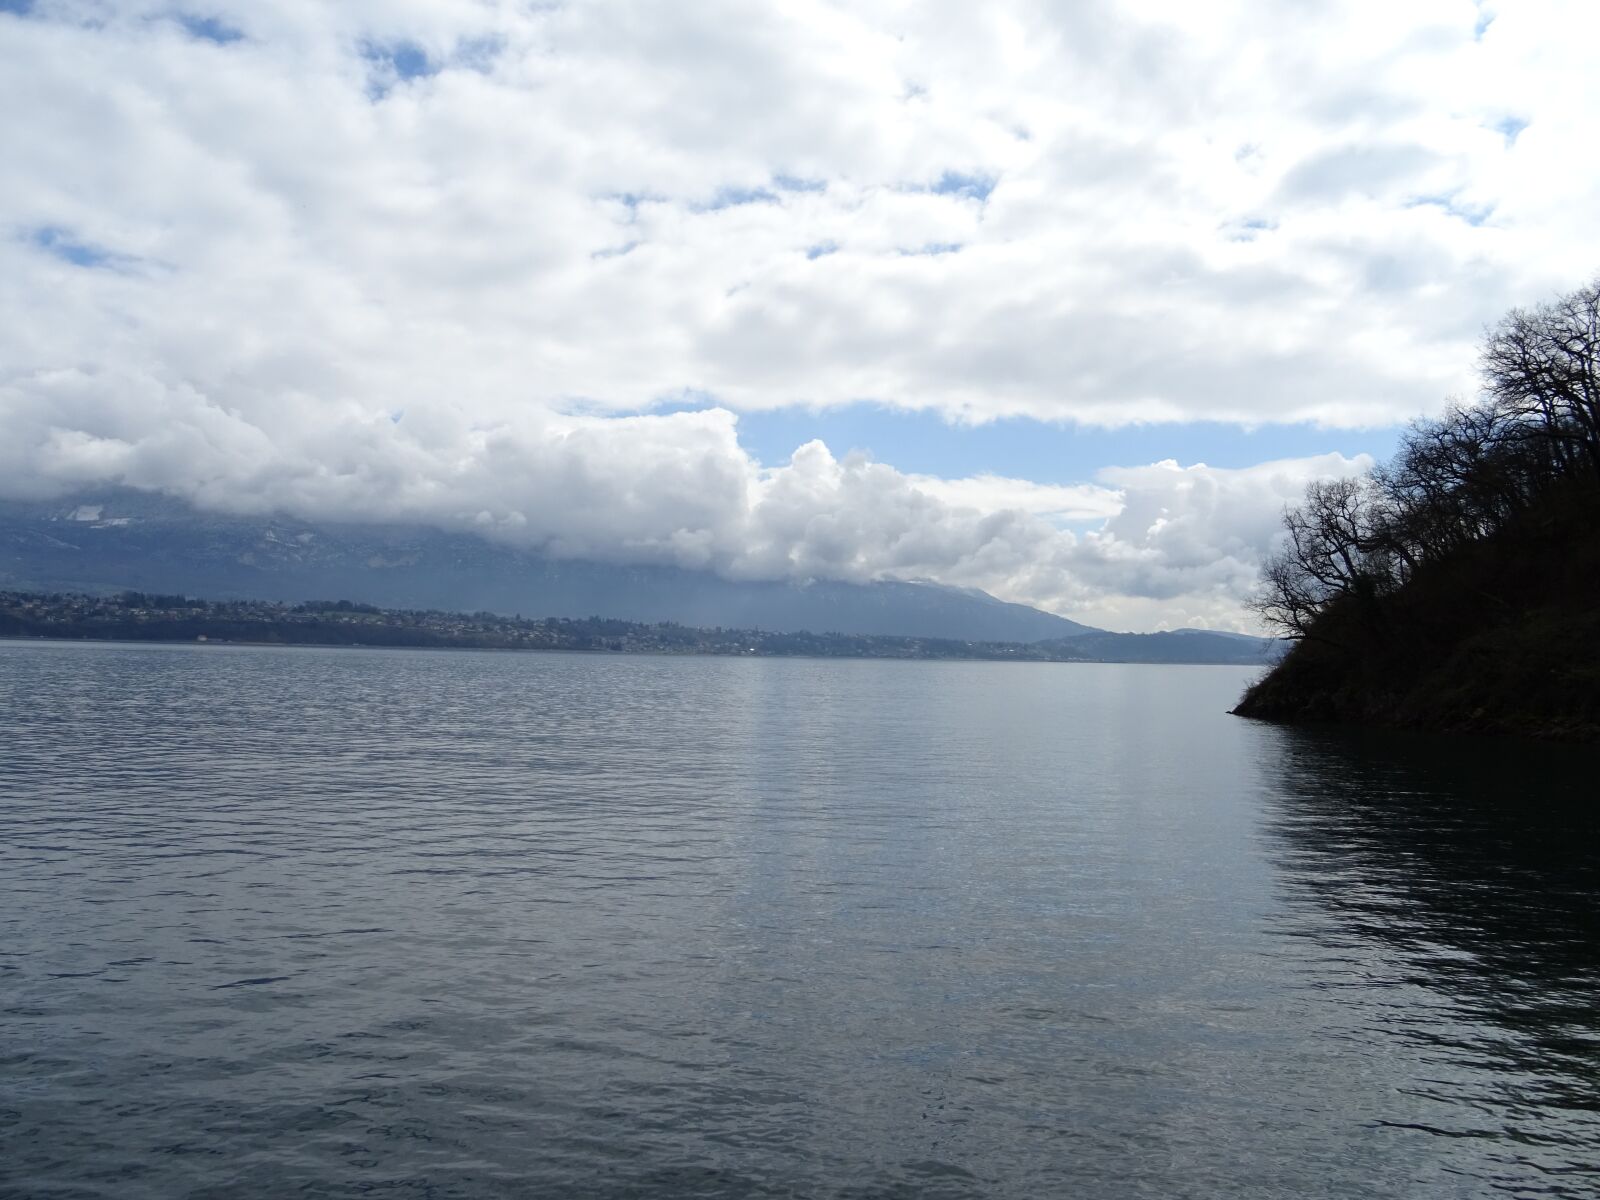 Sony DSC-HX60V sample photo. Lake, clouds, grey photography